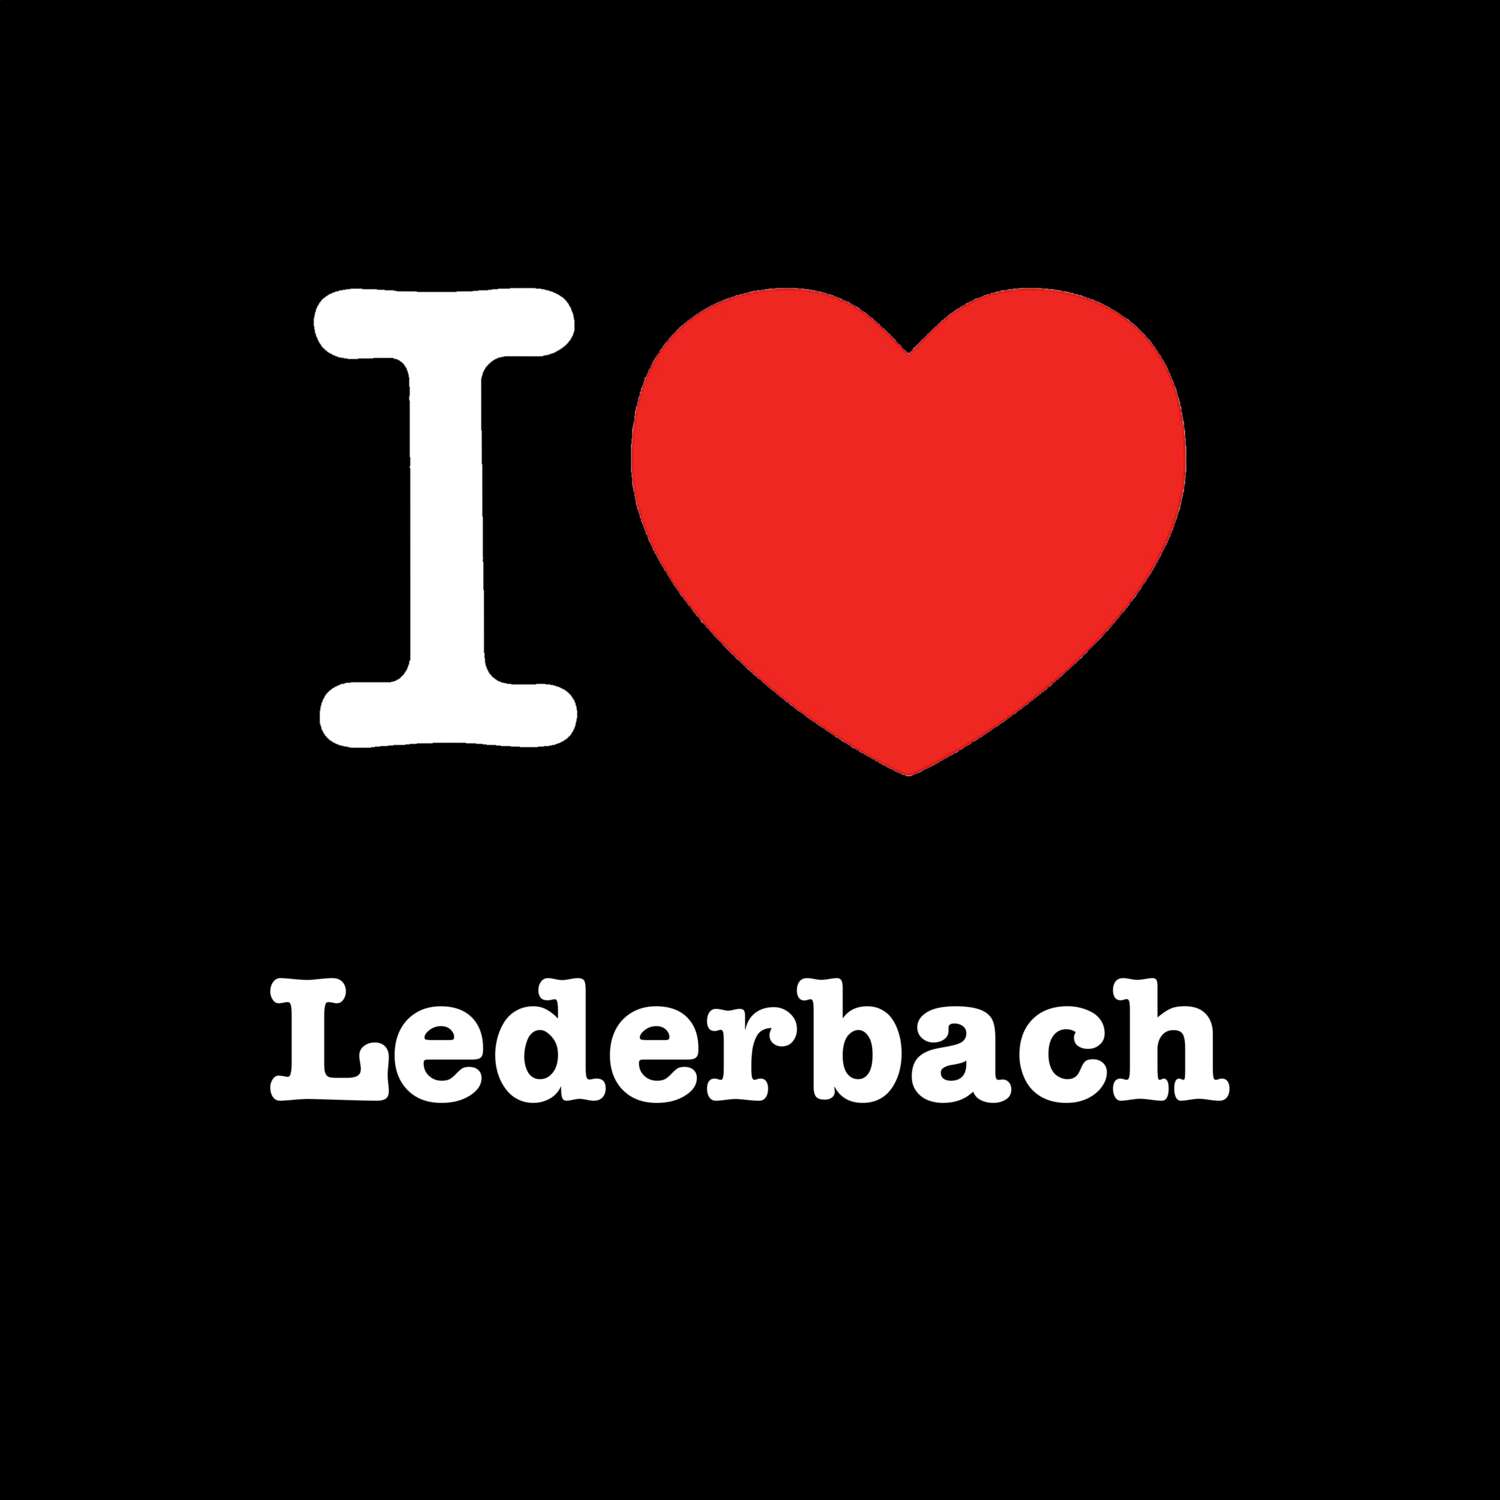 Lederbach T-Shirt »I love«